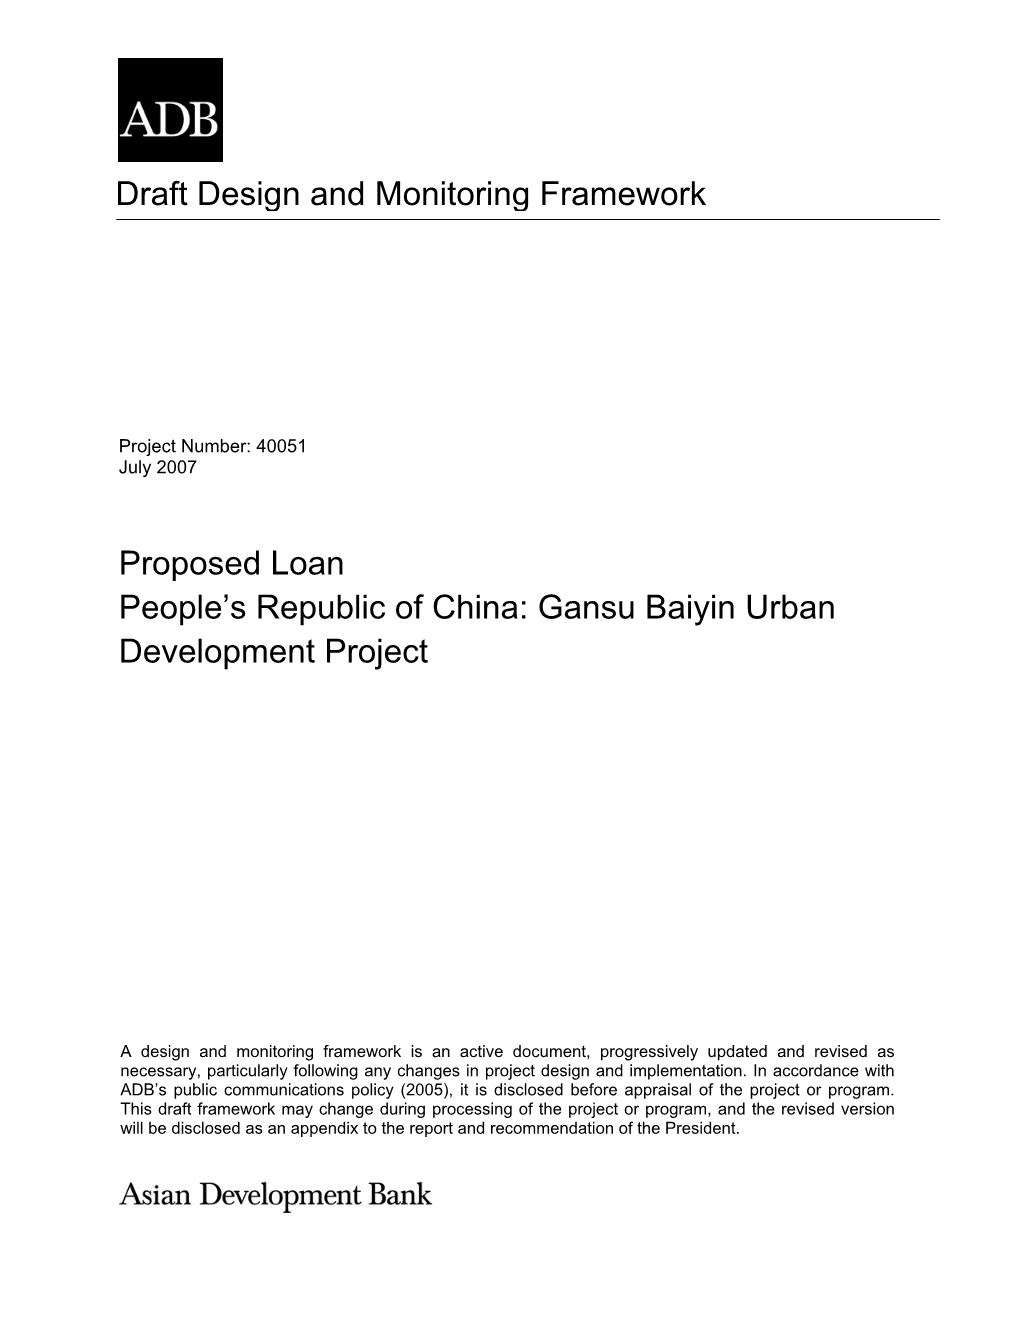 Gansu Baiyin Urban Development Project